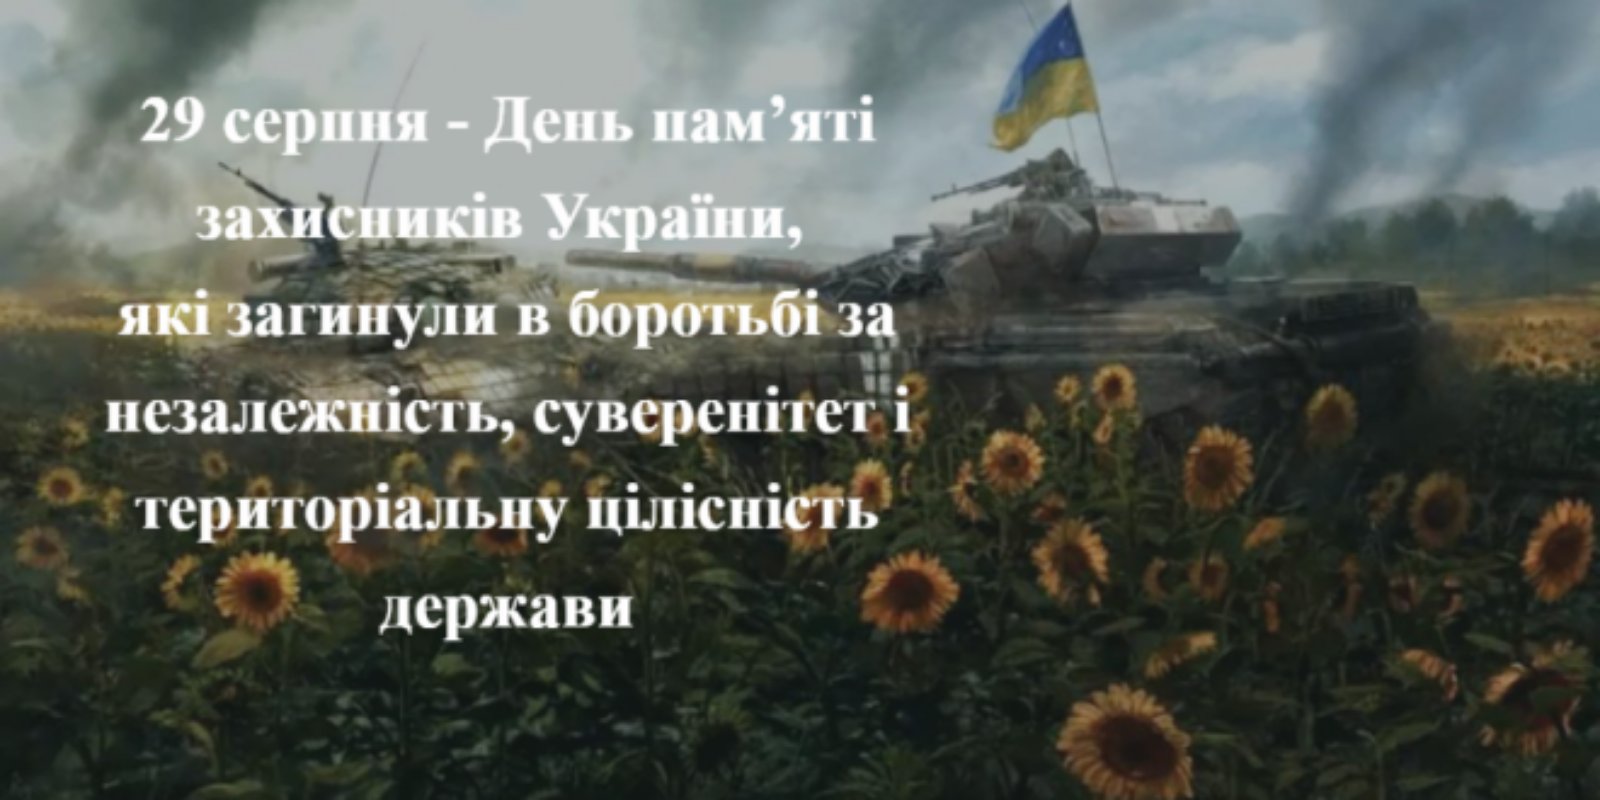 Детальніше про статтю 29 серпня – День пам’яті захисників України